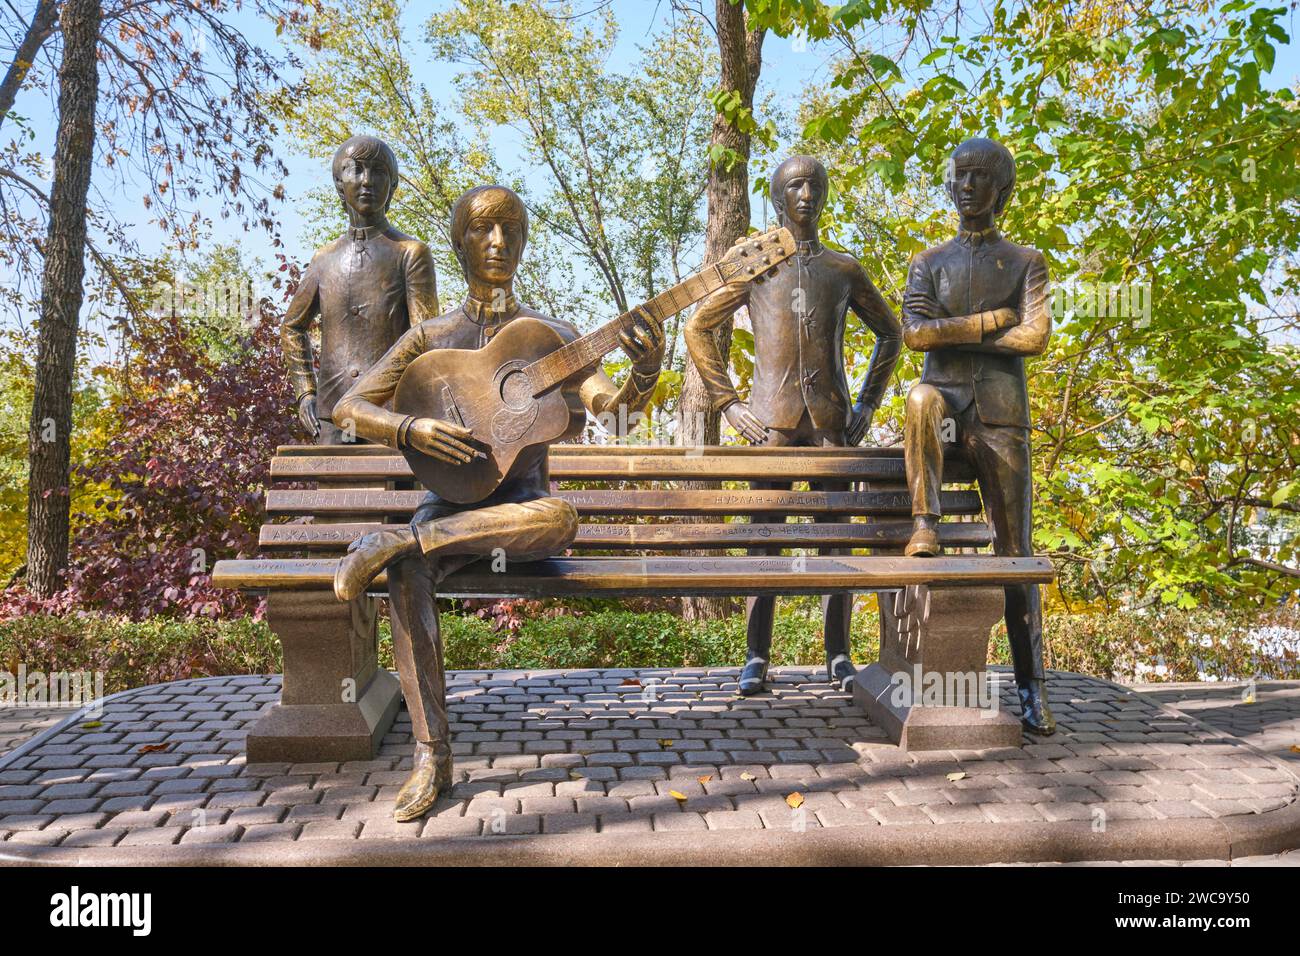 Una scultura in bronzo a grandezza naturale della band The Beatles. Nella zona del parco divertimenti turistico di Kok Tobe in cima alla montagna ad Almaty, Kazakistan. Foto Stock